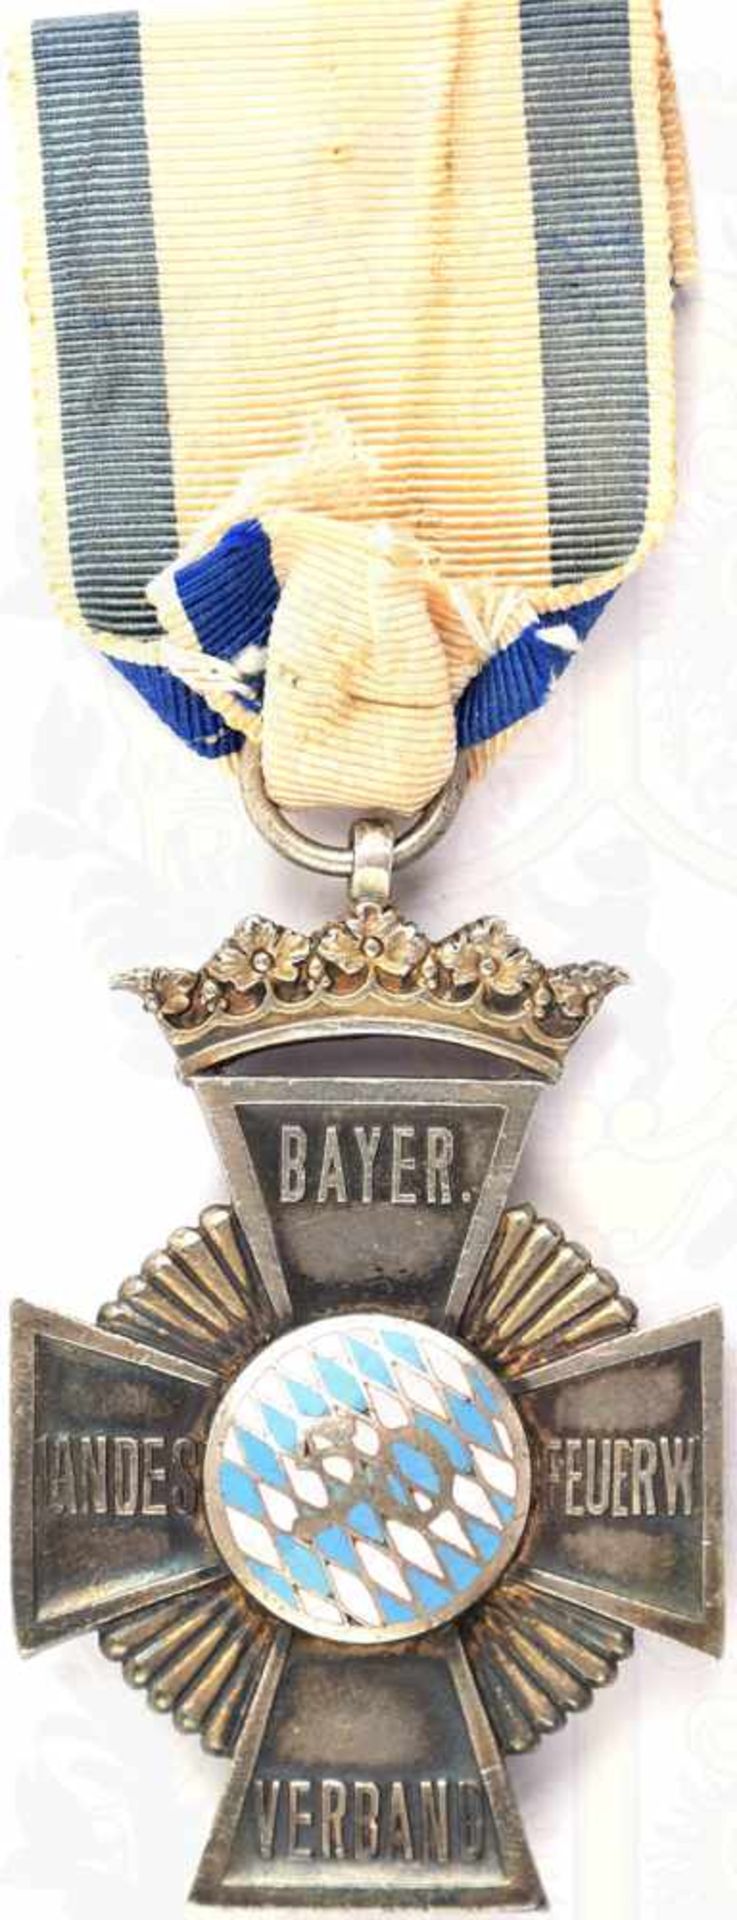 FEUERWEHR-EHRENKREUZ MIT KRONE, für 50 Jahre, Bayerischer Landes Feuerwehr-Verband 1932-1936, - Bild 2 aus 2